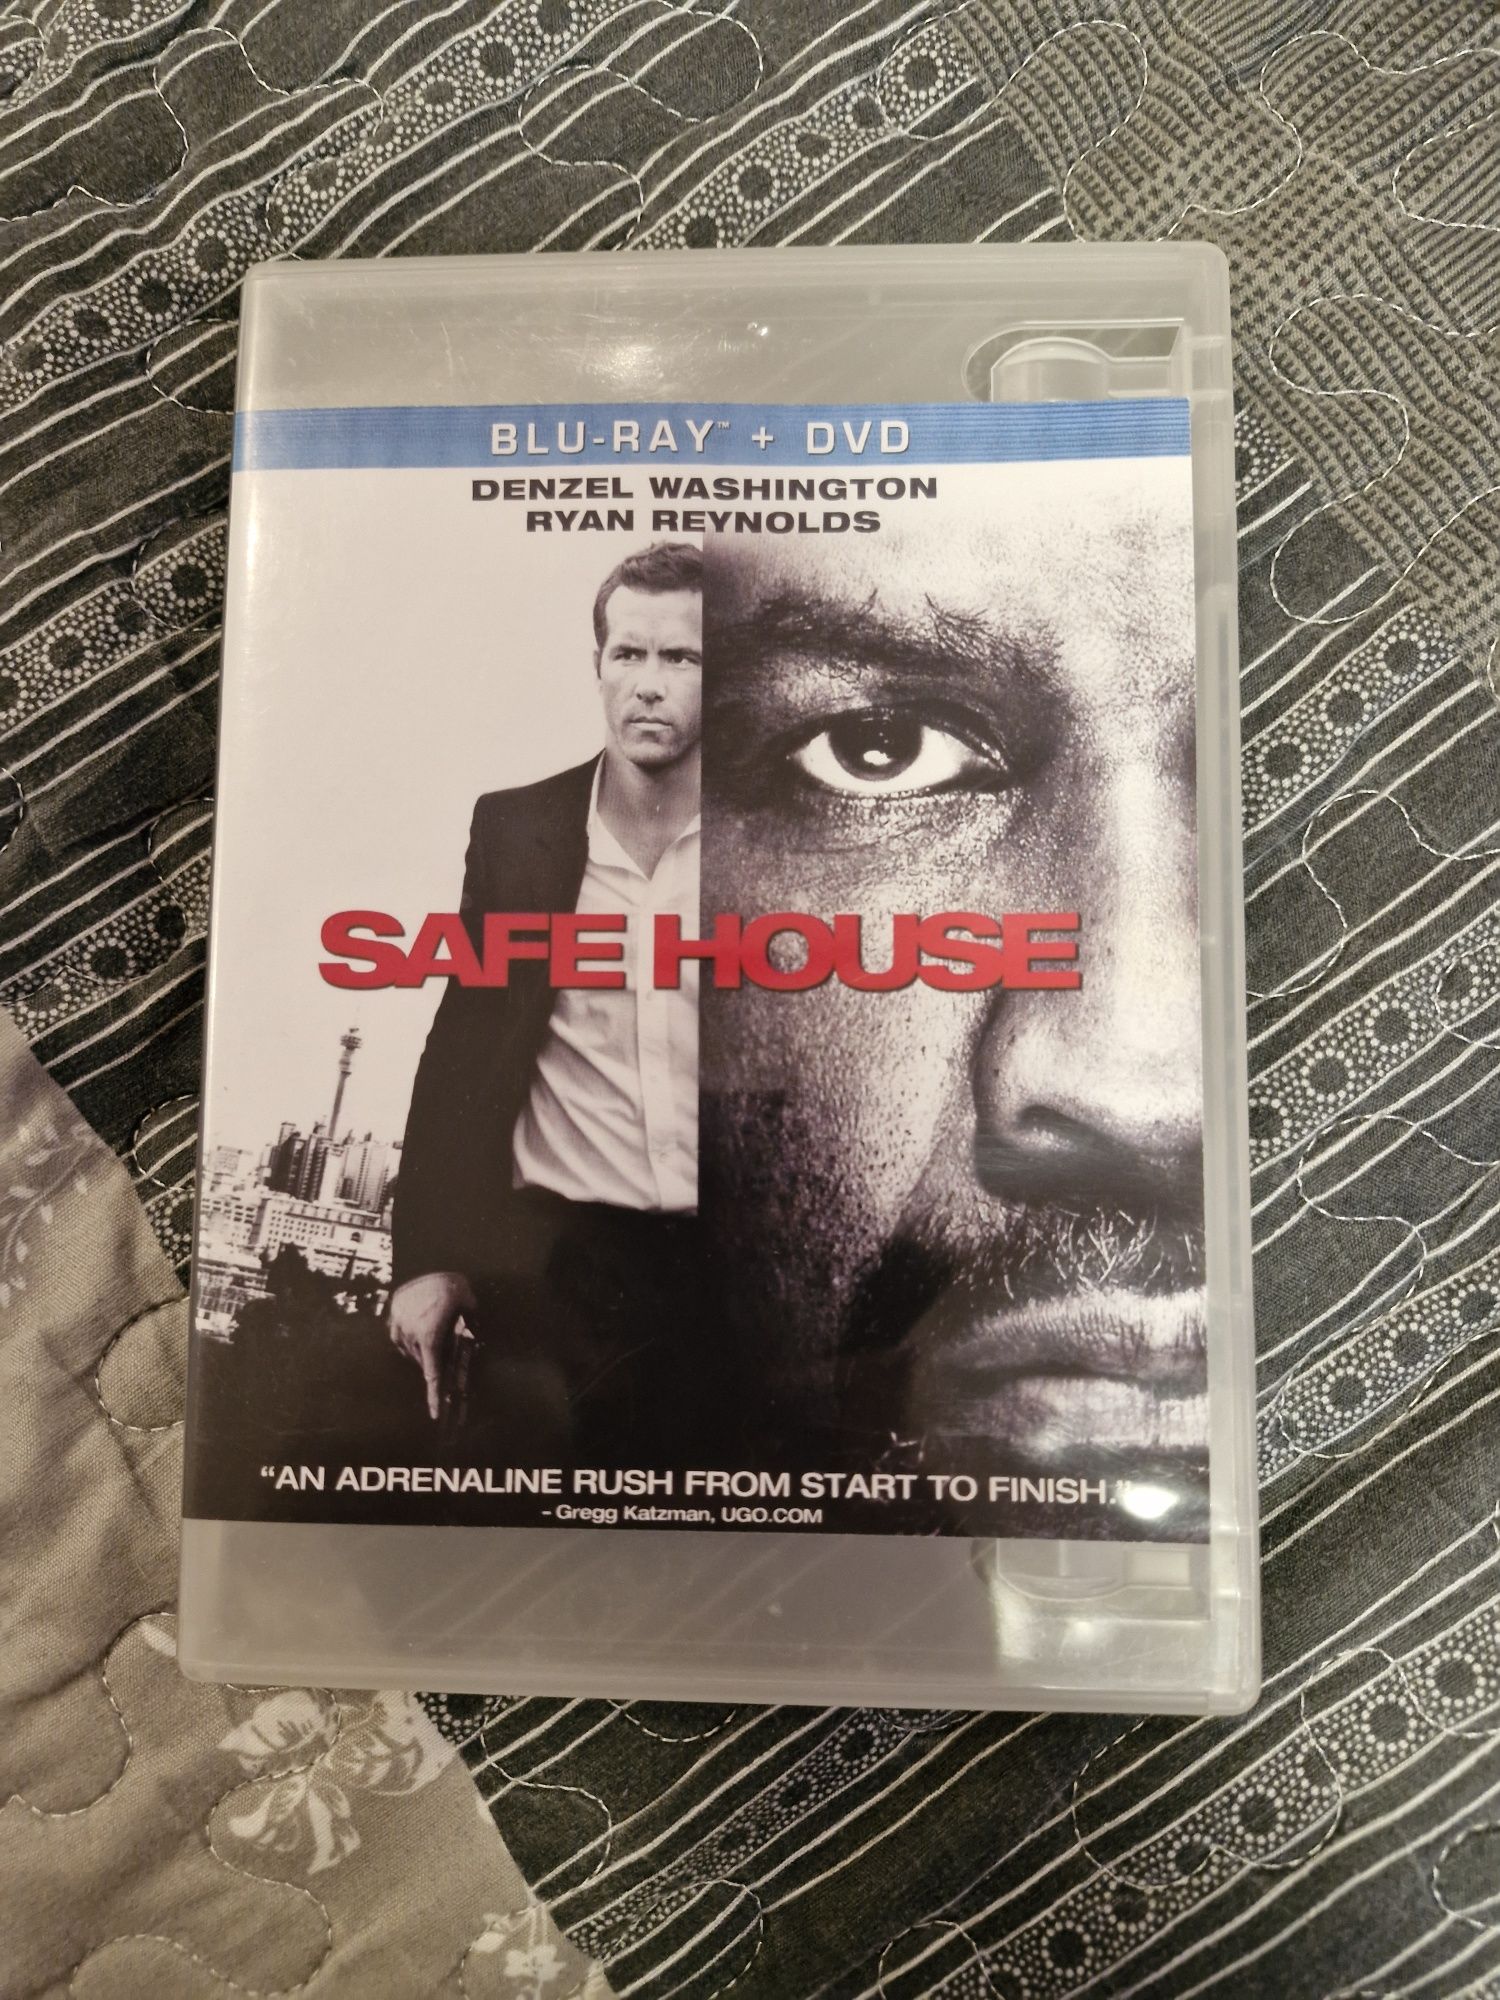 Film "safe house"